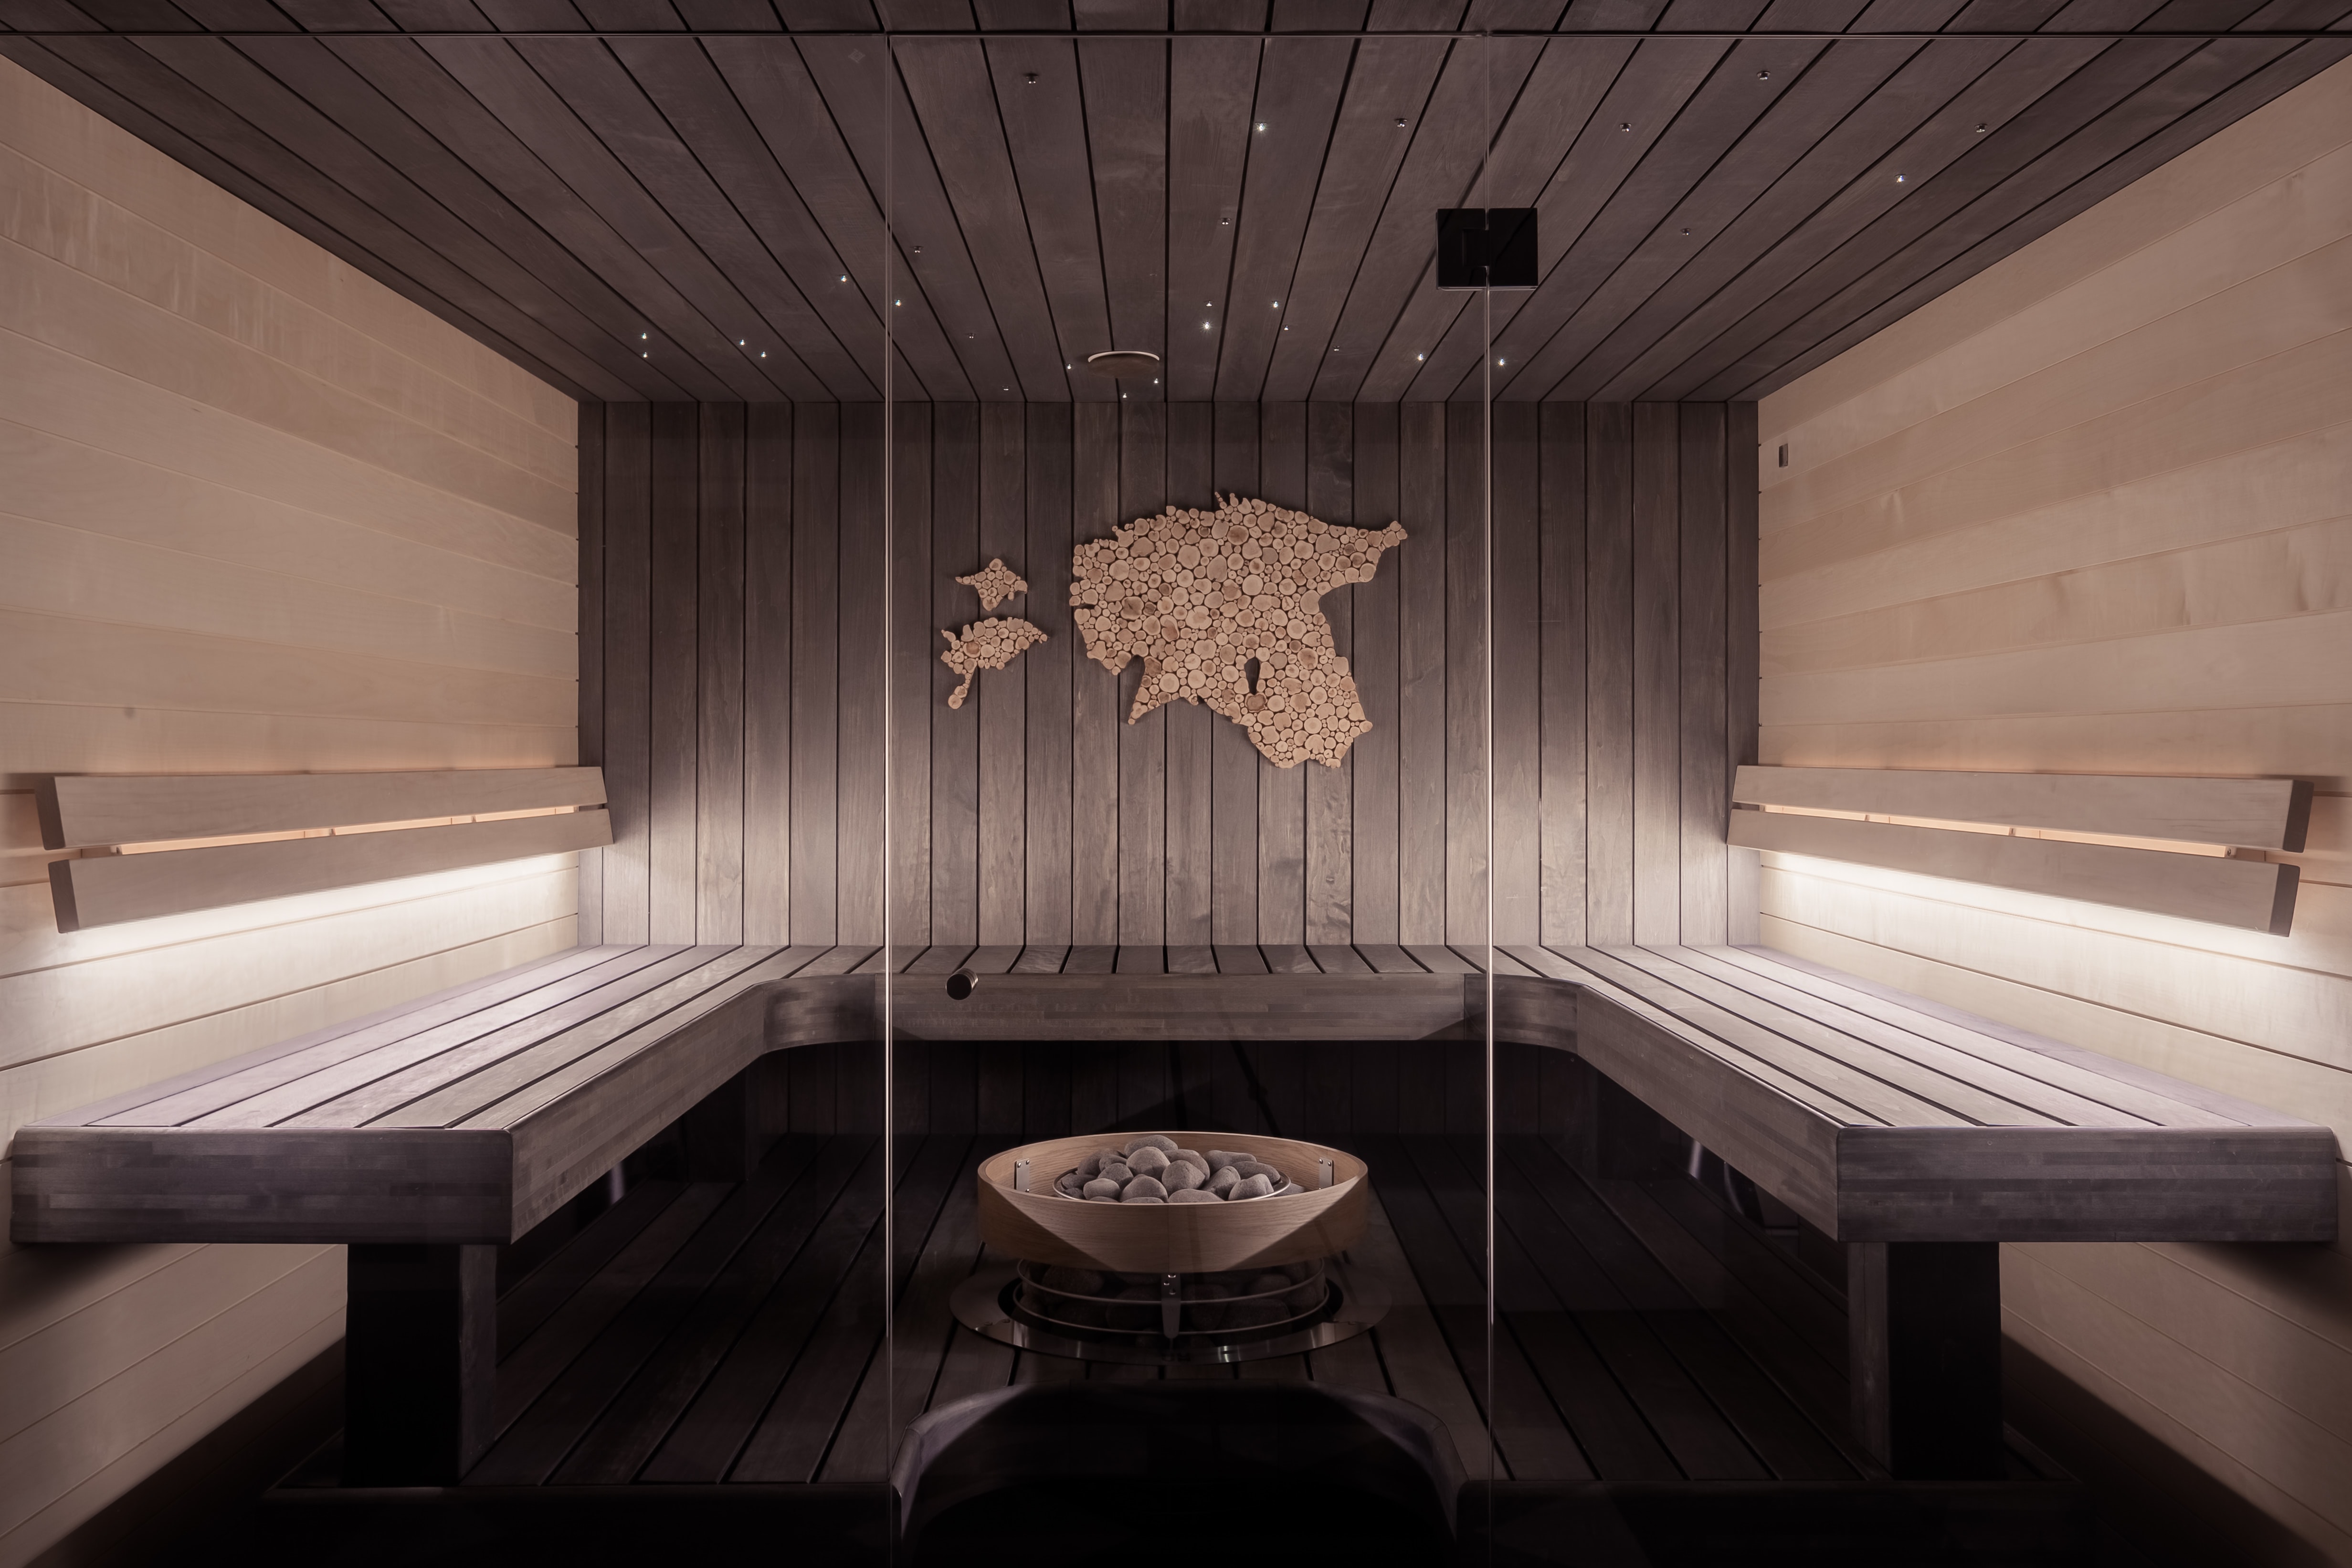 Qué es una sauna finlandesa?